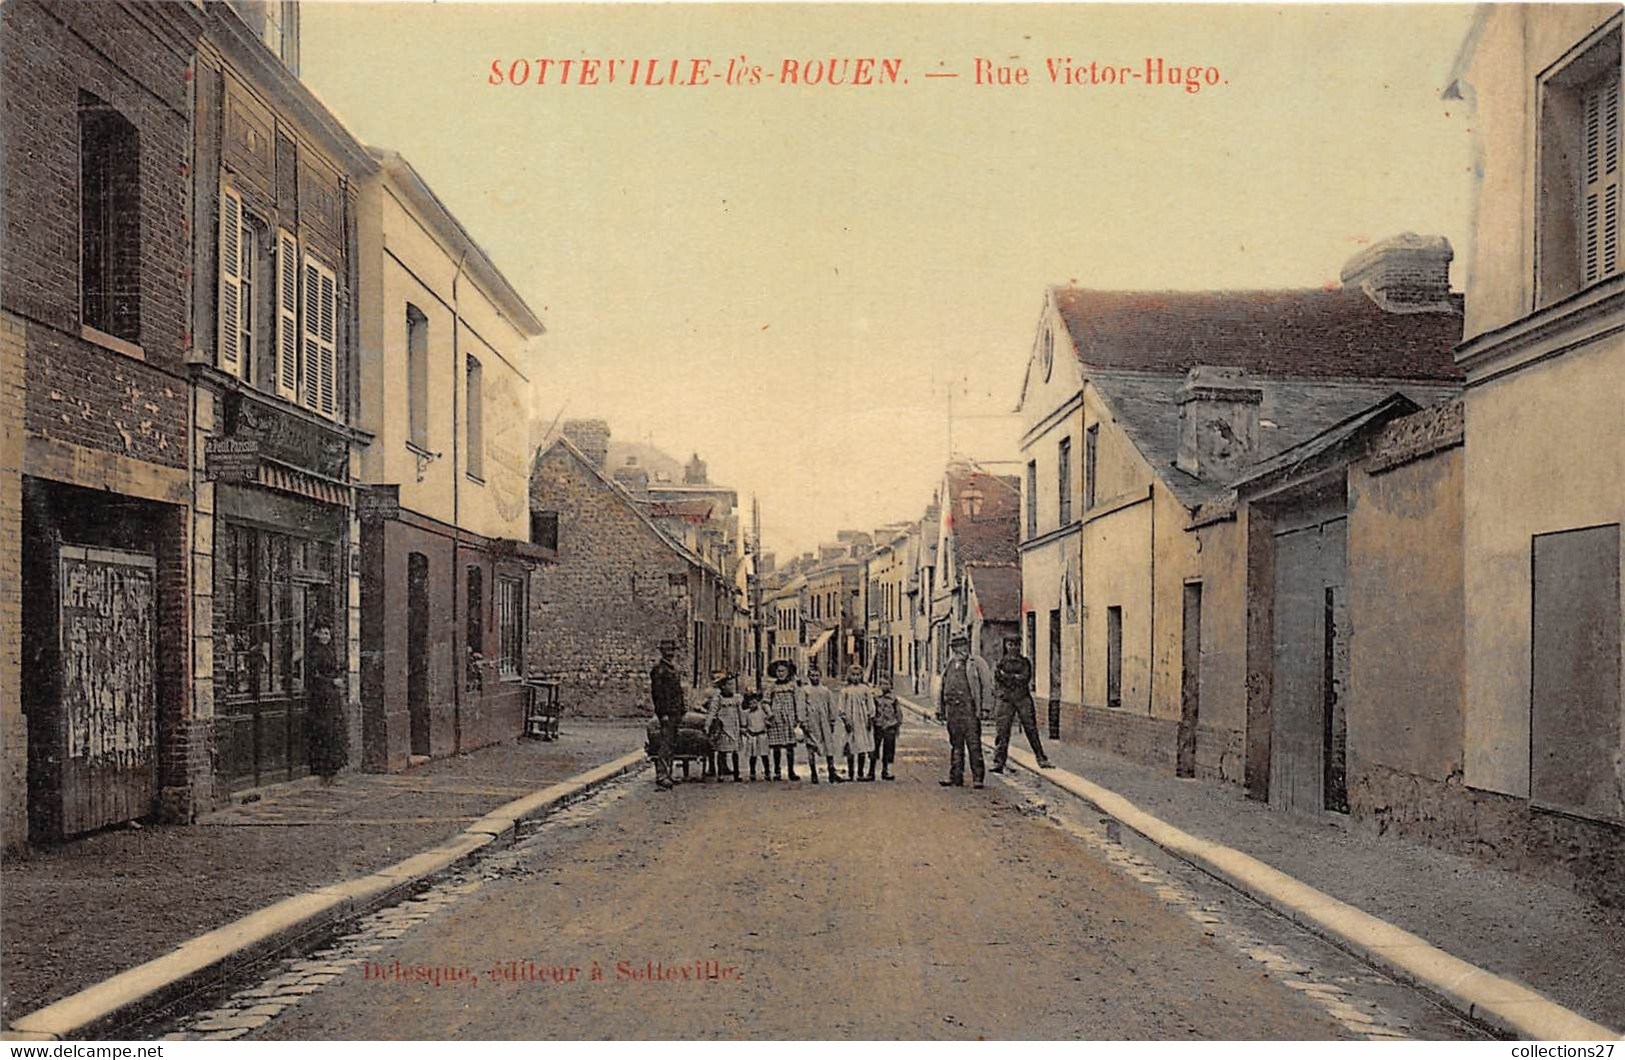 76-SOTTEVILLE-LES-ROUEN- RUE VICTOR-HUGO - Sotteville Les Rouen